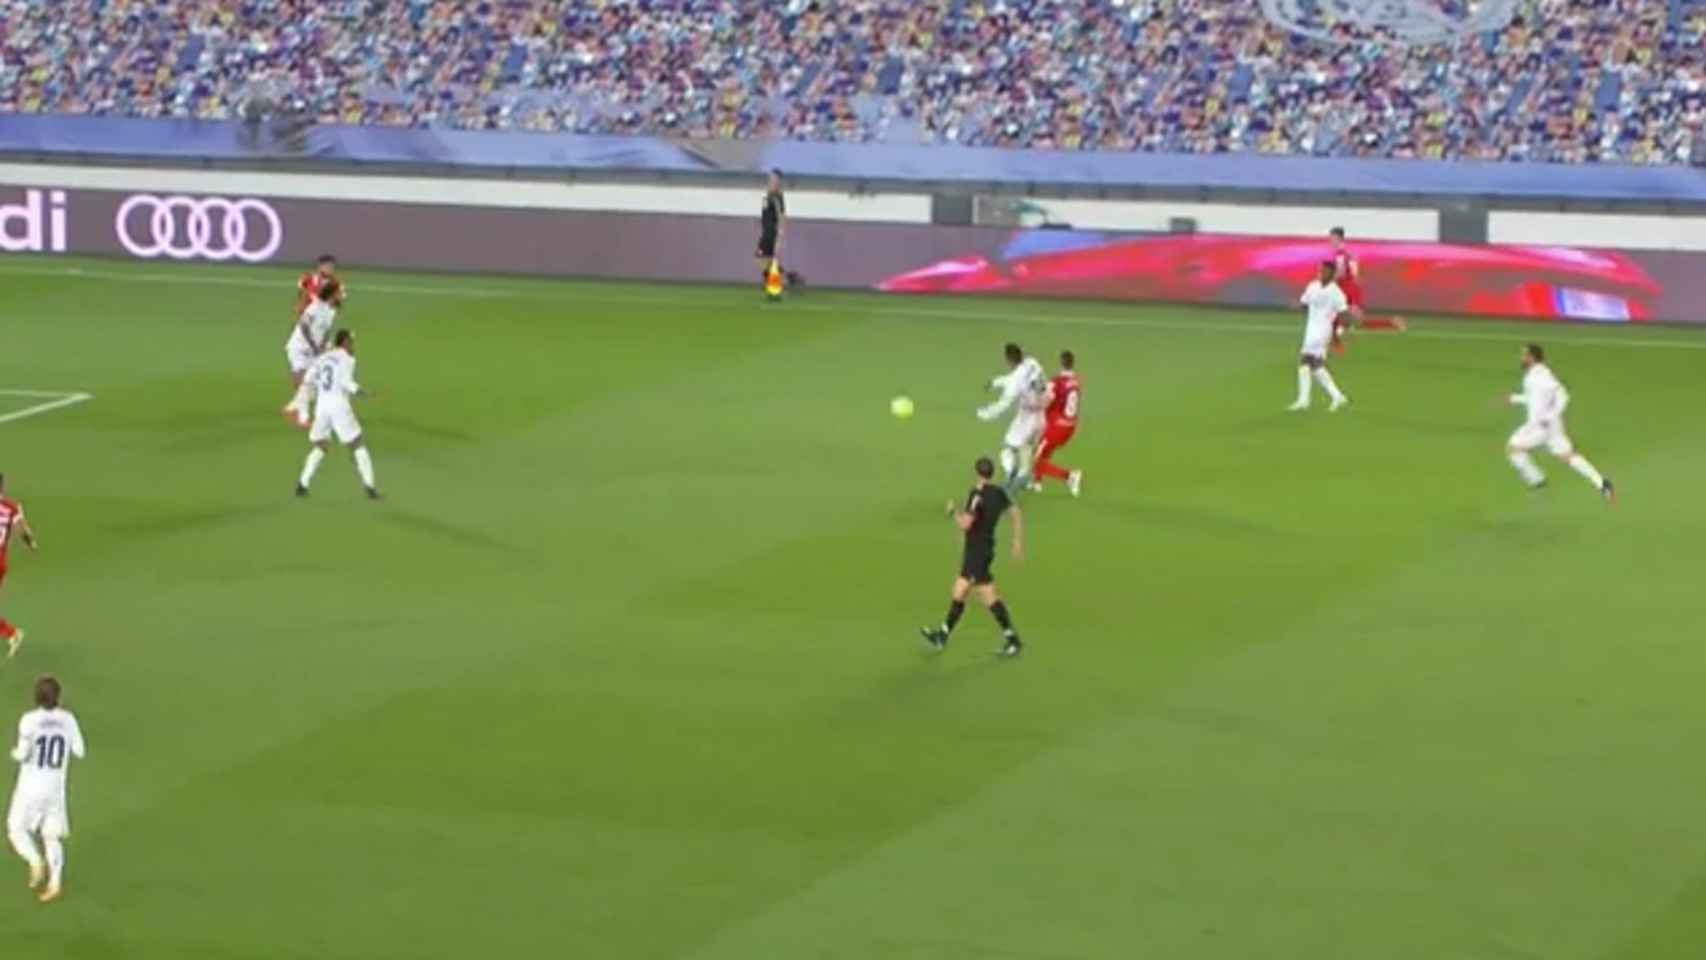 Martínez Munuera pita a falta de Casemiro previa al gol del Sevilla